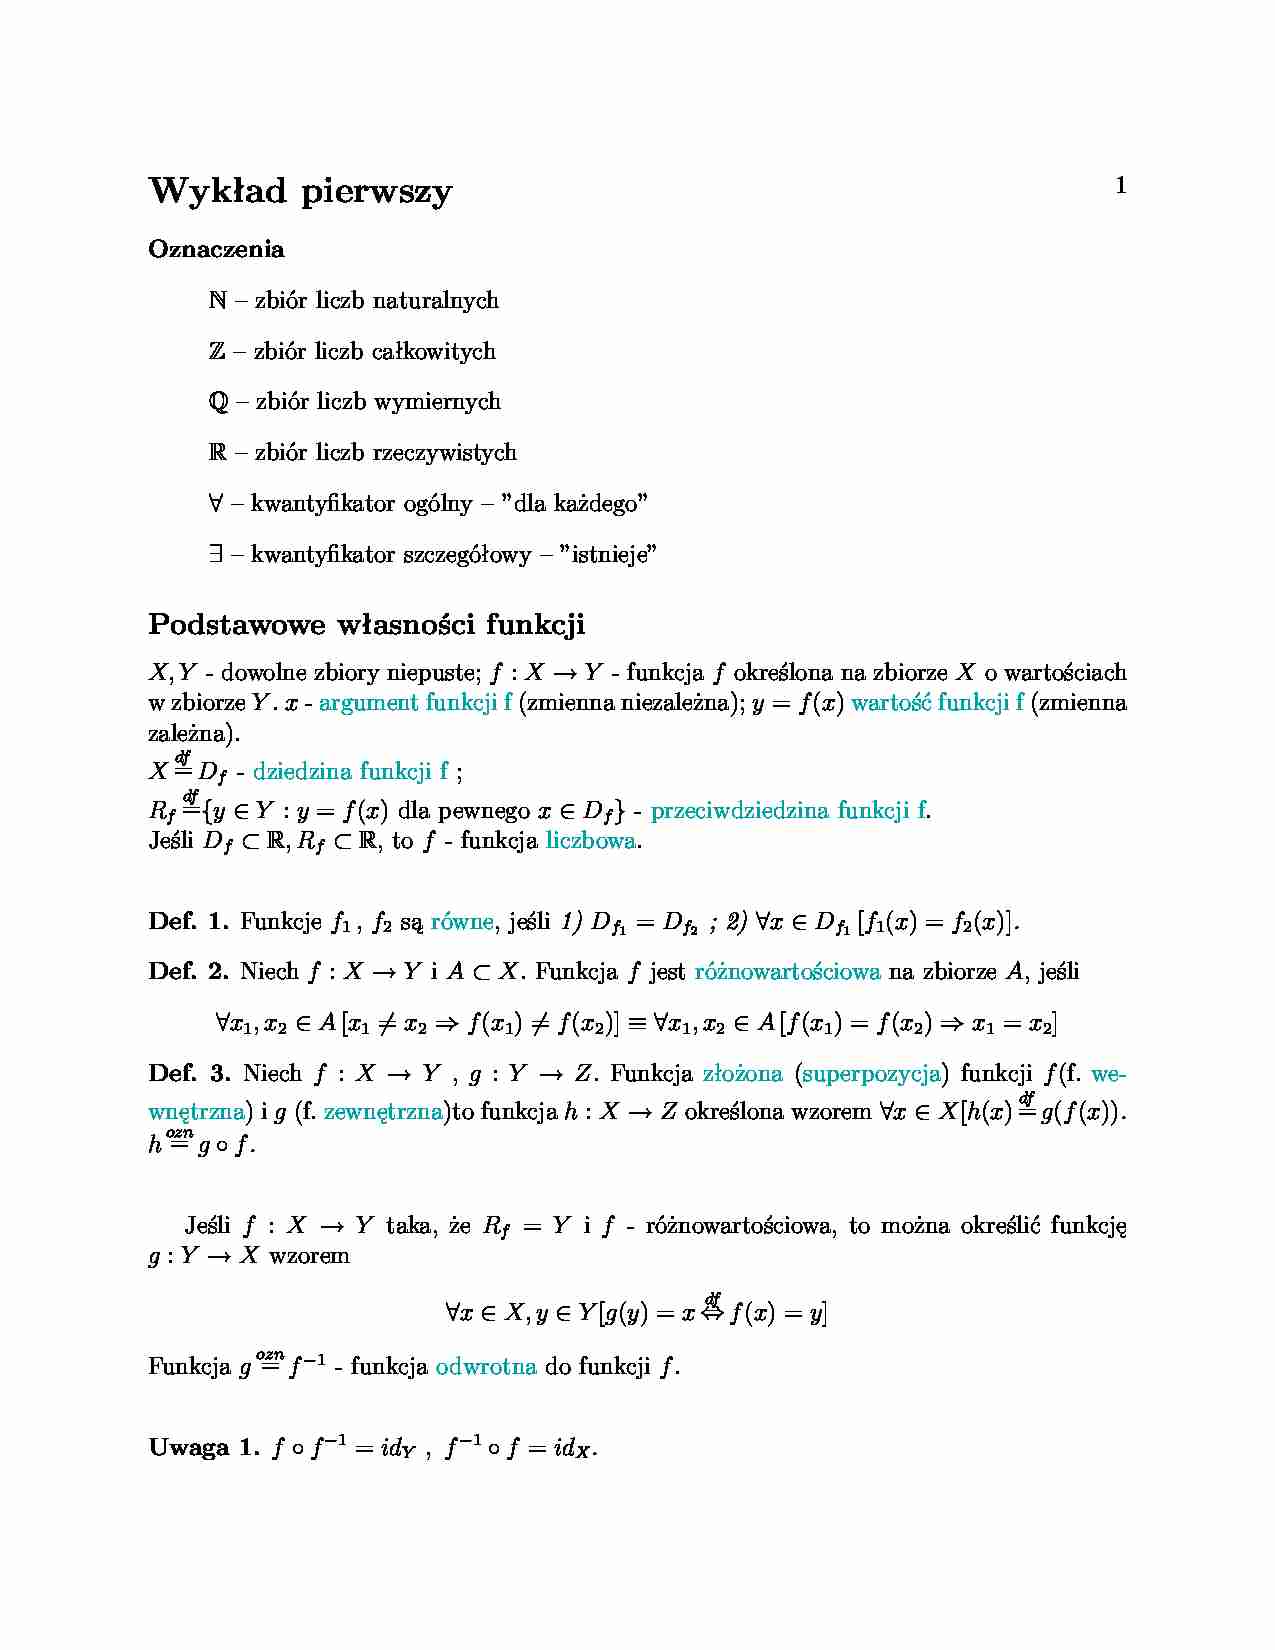 wykład 01, podstawowe własności funkcji - strona 1